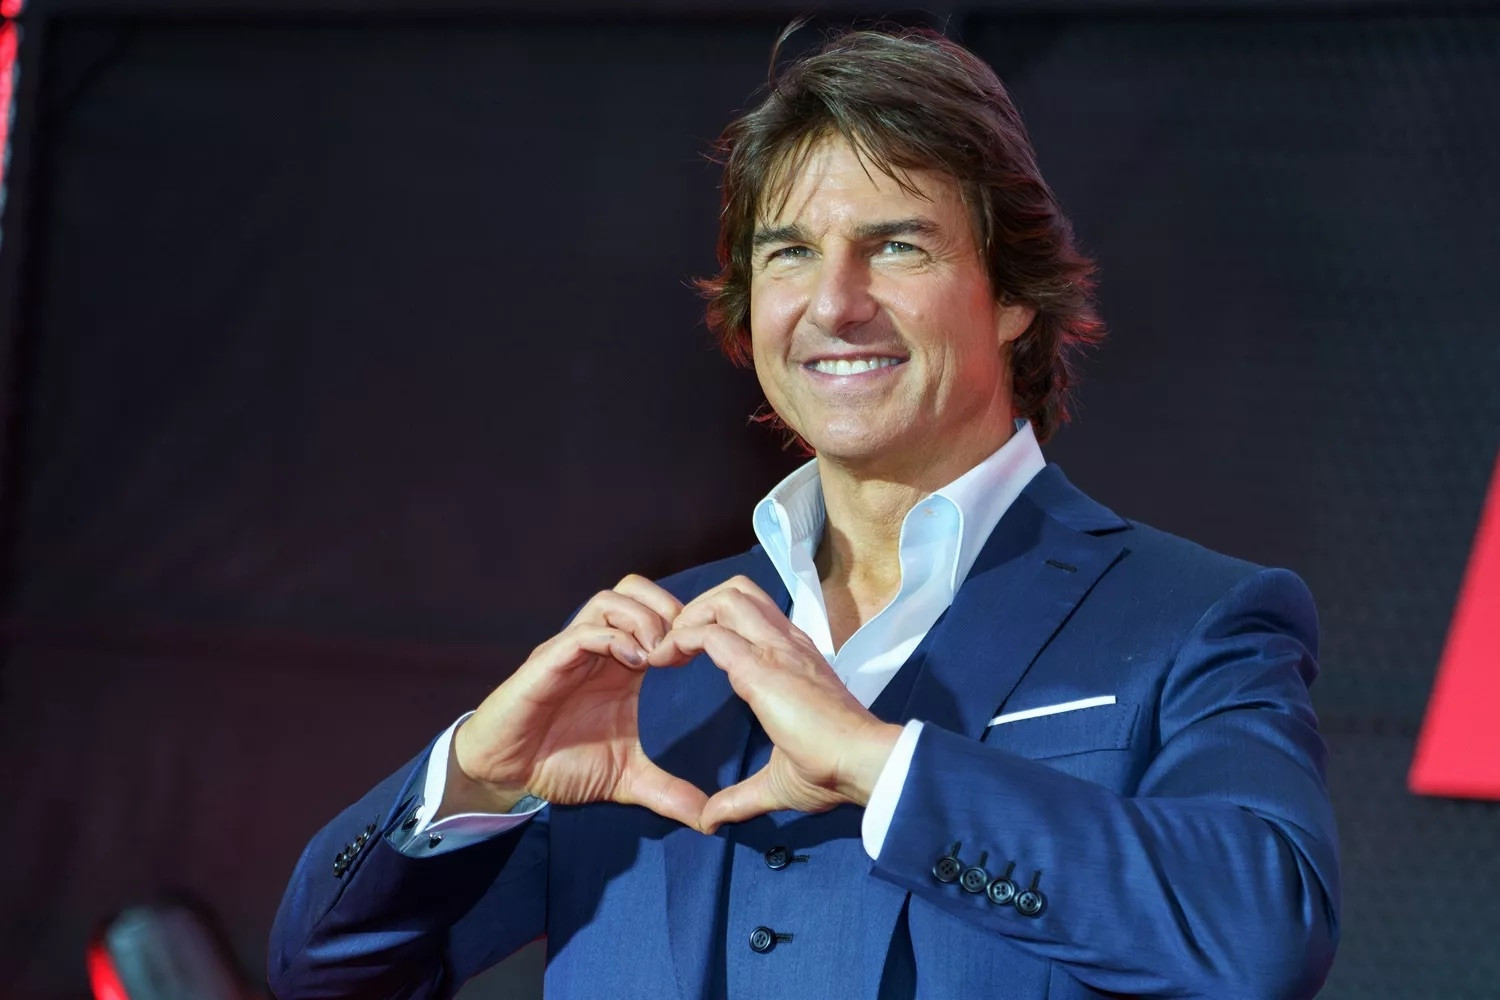 Bộ sưu tập đồng hồ độc đáo của diễn viên Tom Cruise